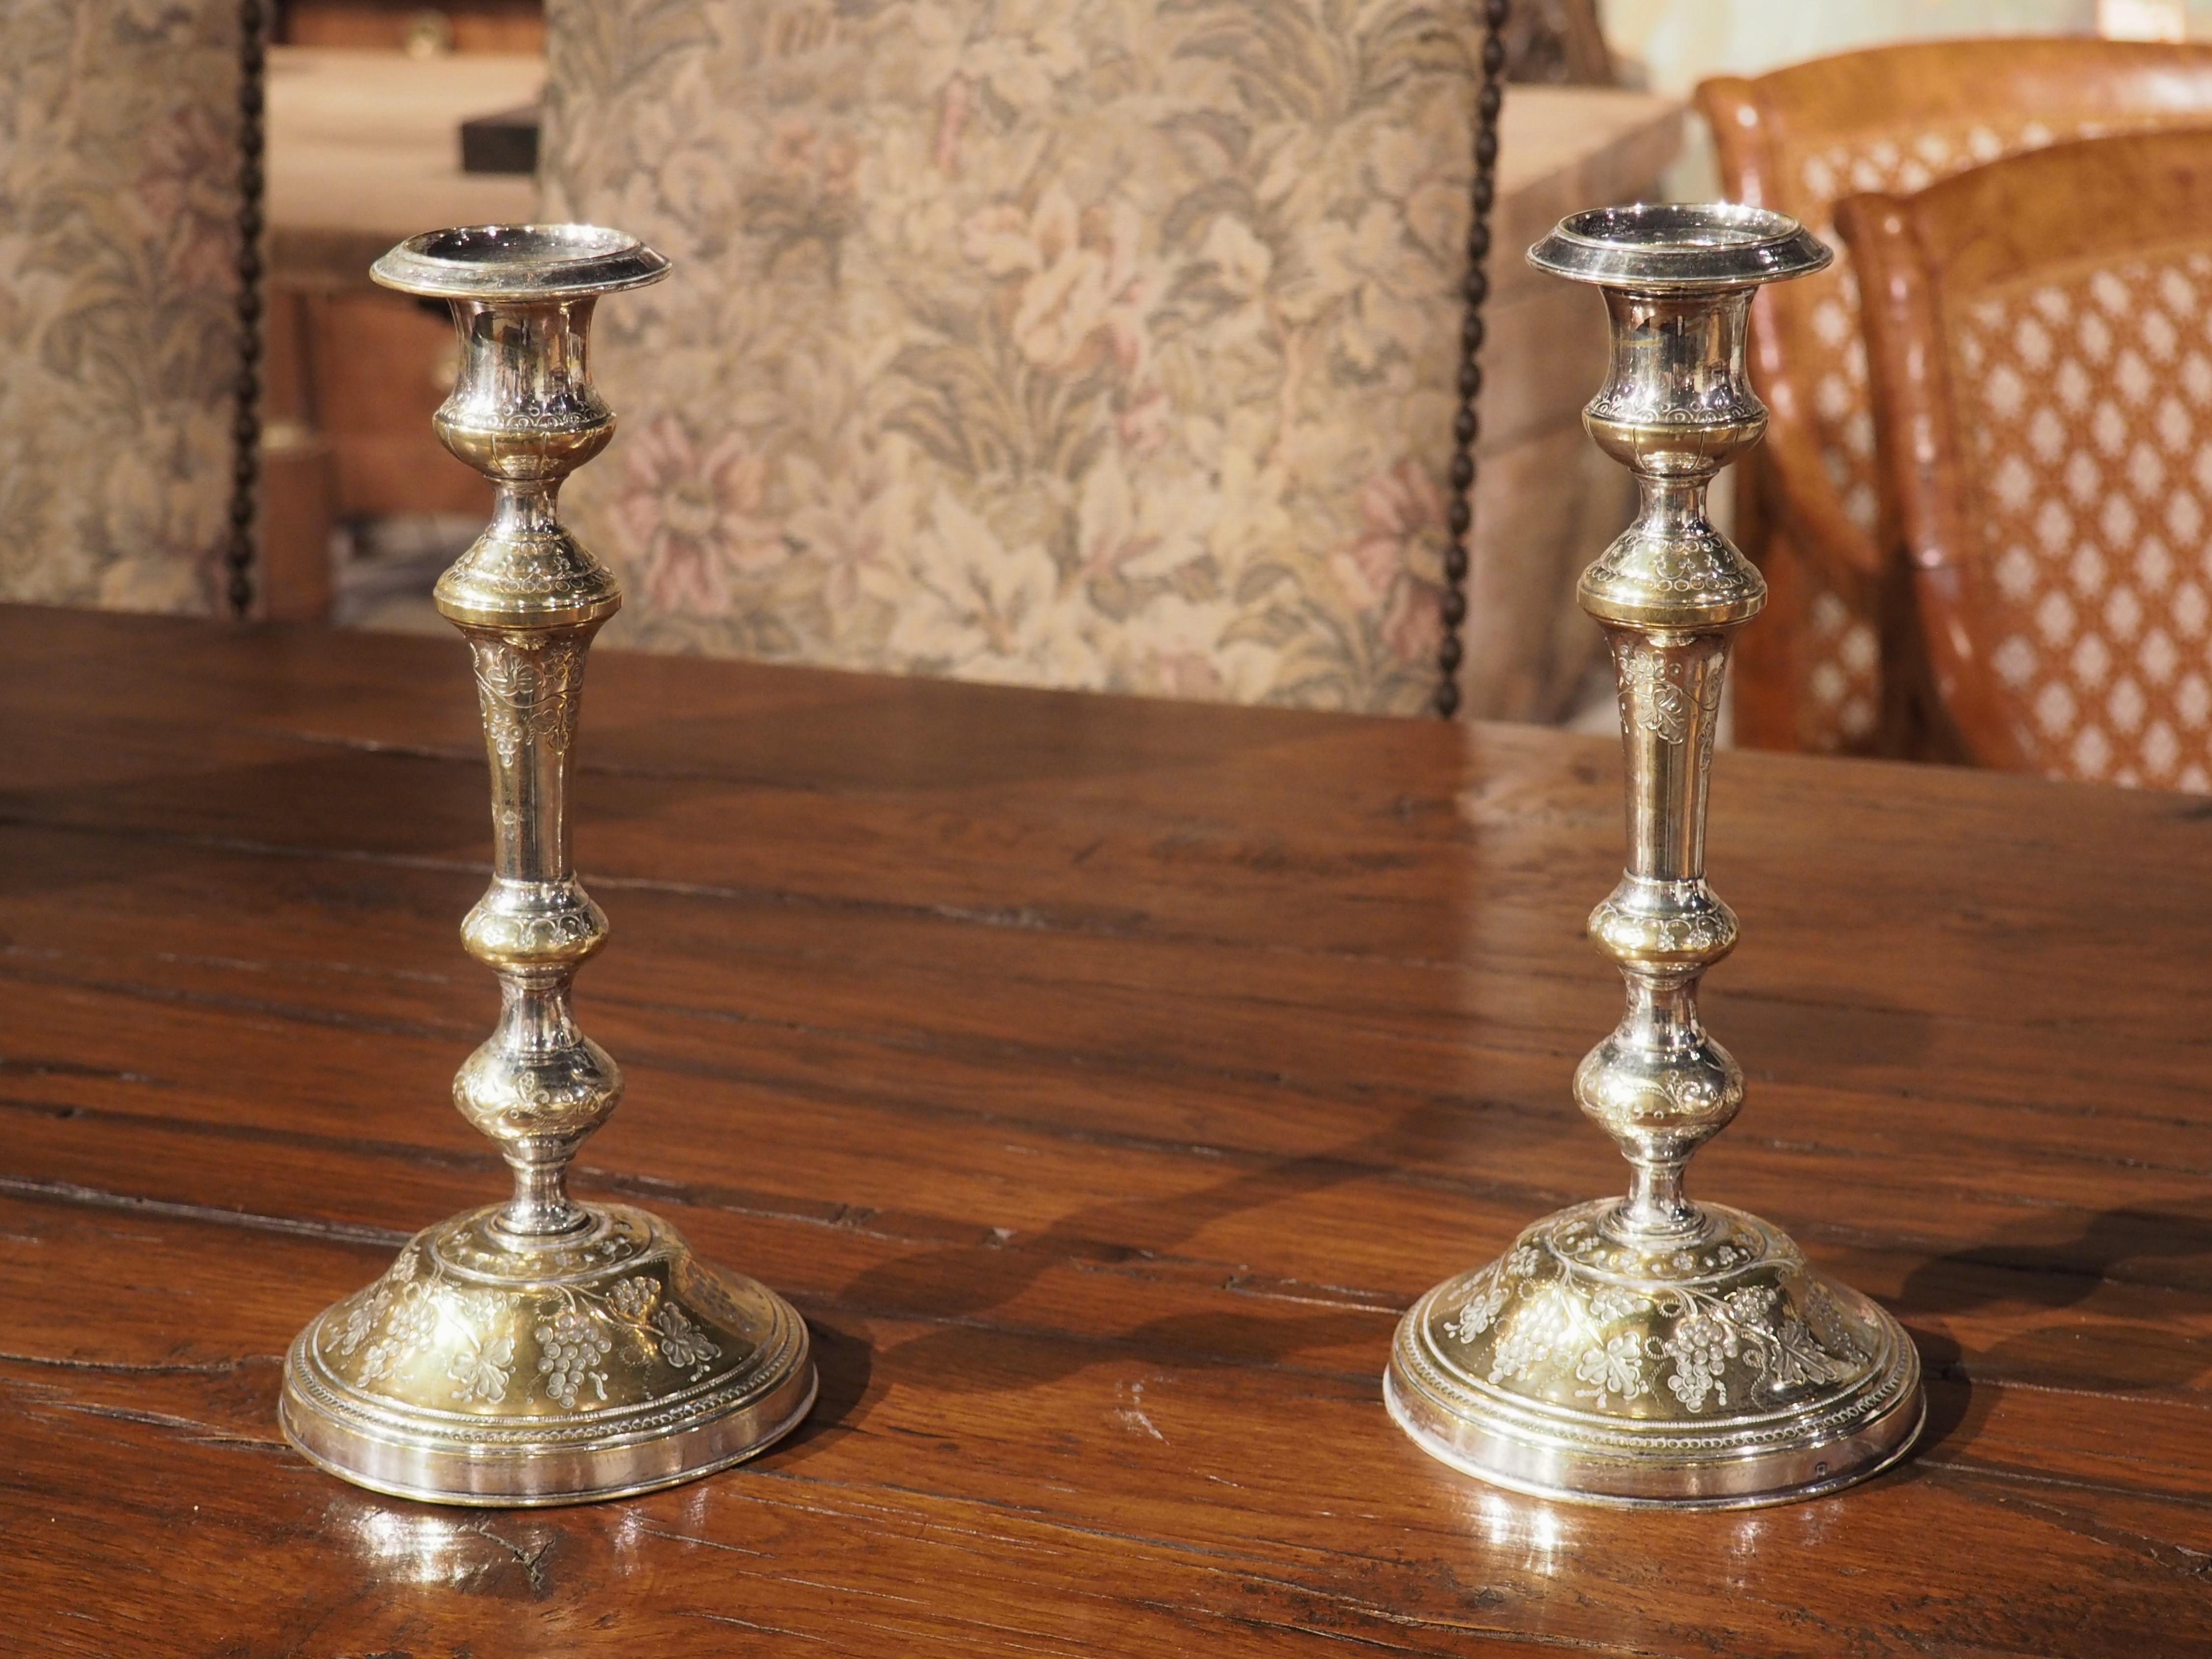 Fondée en France au cours des années 1700, cette paire de chandeliers en bronze argenté est délicatement ciselée de motifs de grappes de raisin. Les chandeliers très sinueux sont dotés de plusieurs pommeaux, tous ornés d'une variété de motifs de